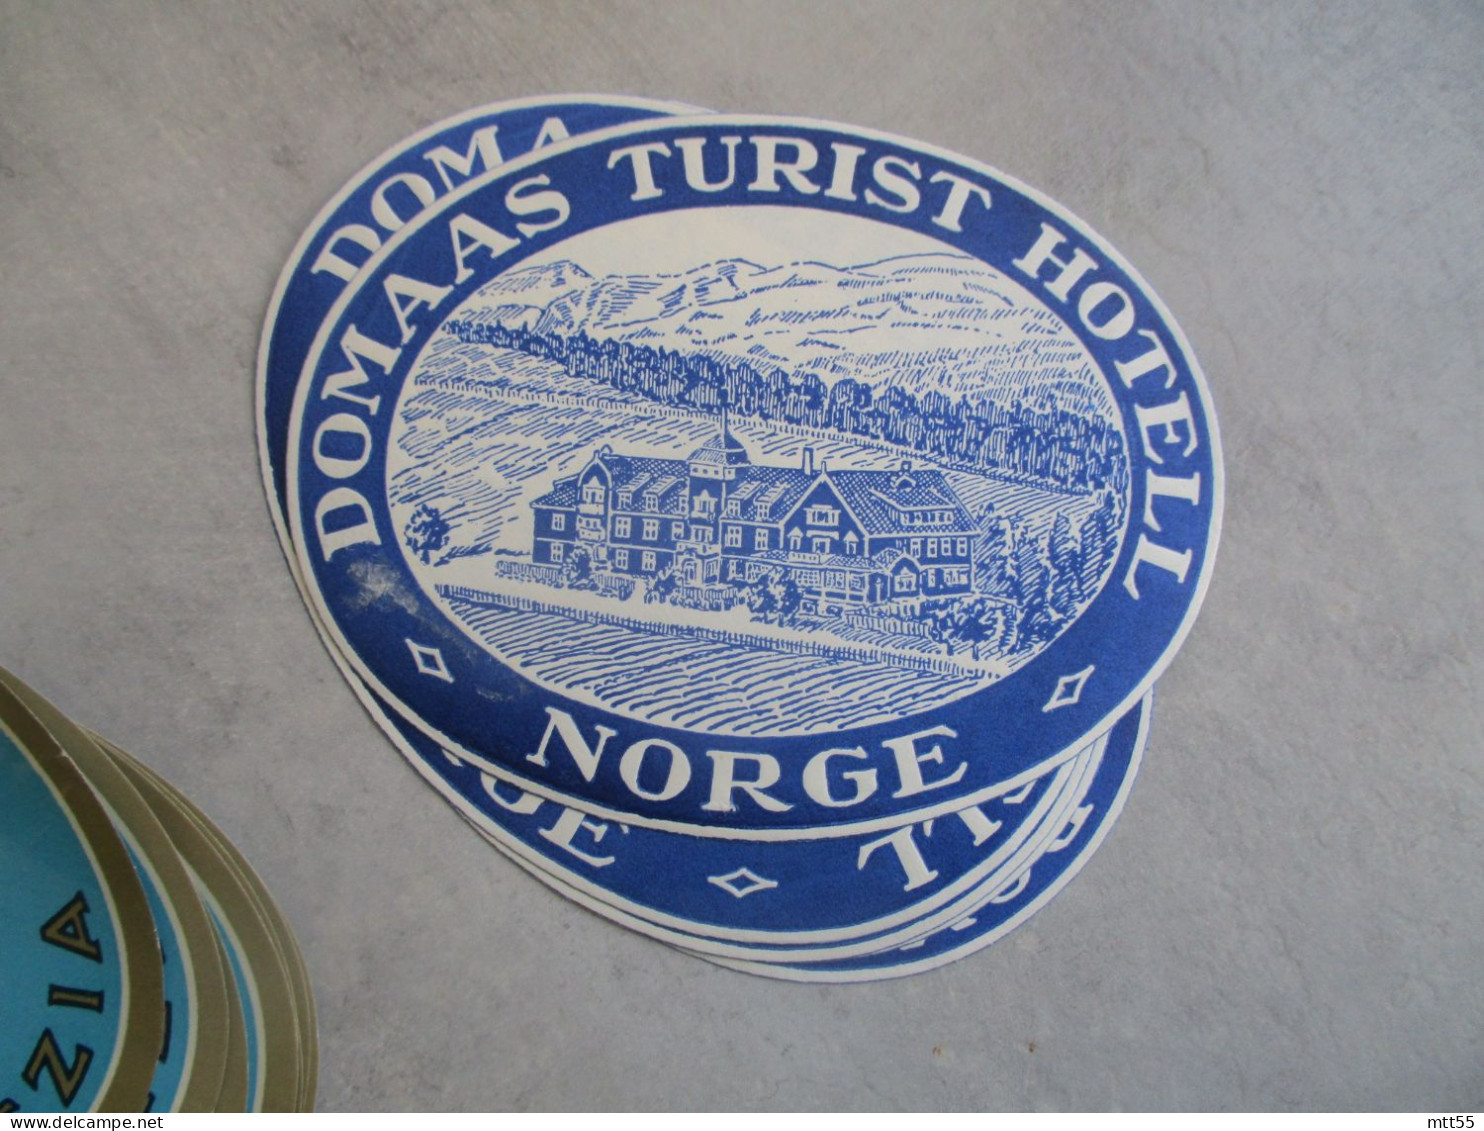 LOT DE 5 ETIQUETTE HOTEL HOTEL DOMAAS TURIST HOTEL NORGE NORVEGE - Hotel Labels